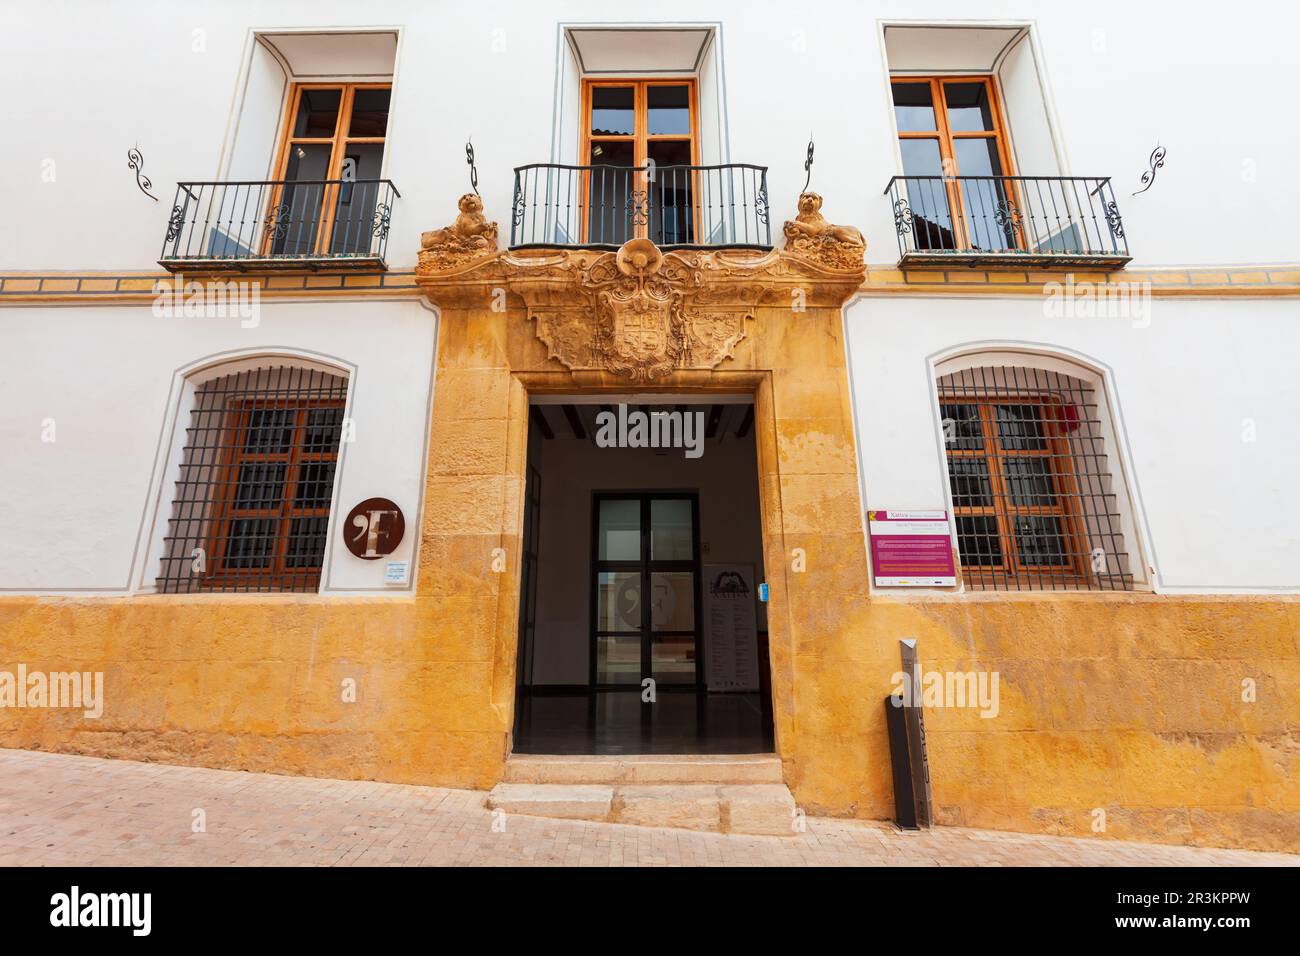 Xativa, Espagne - 17 octobre 2021: Musée des beaux-arts ou Museo de Bellas Artes dans la ville de Xativa près de Valence en Espagne Banque D'Images